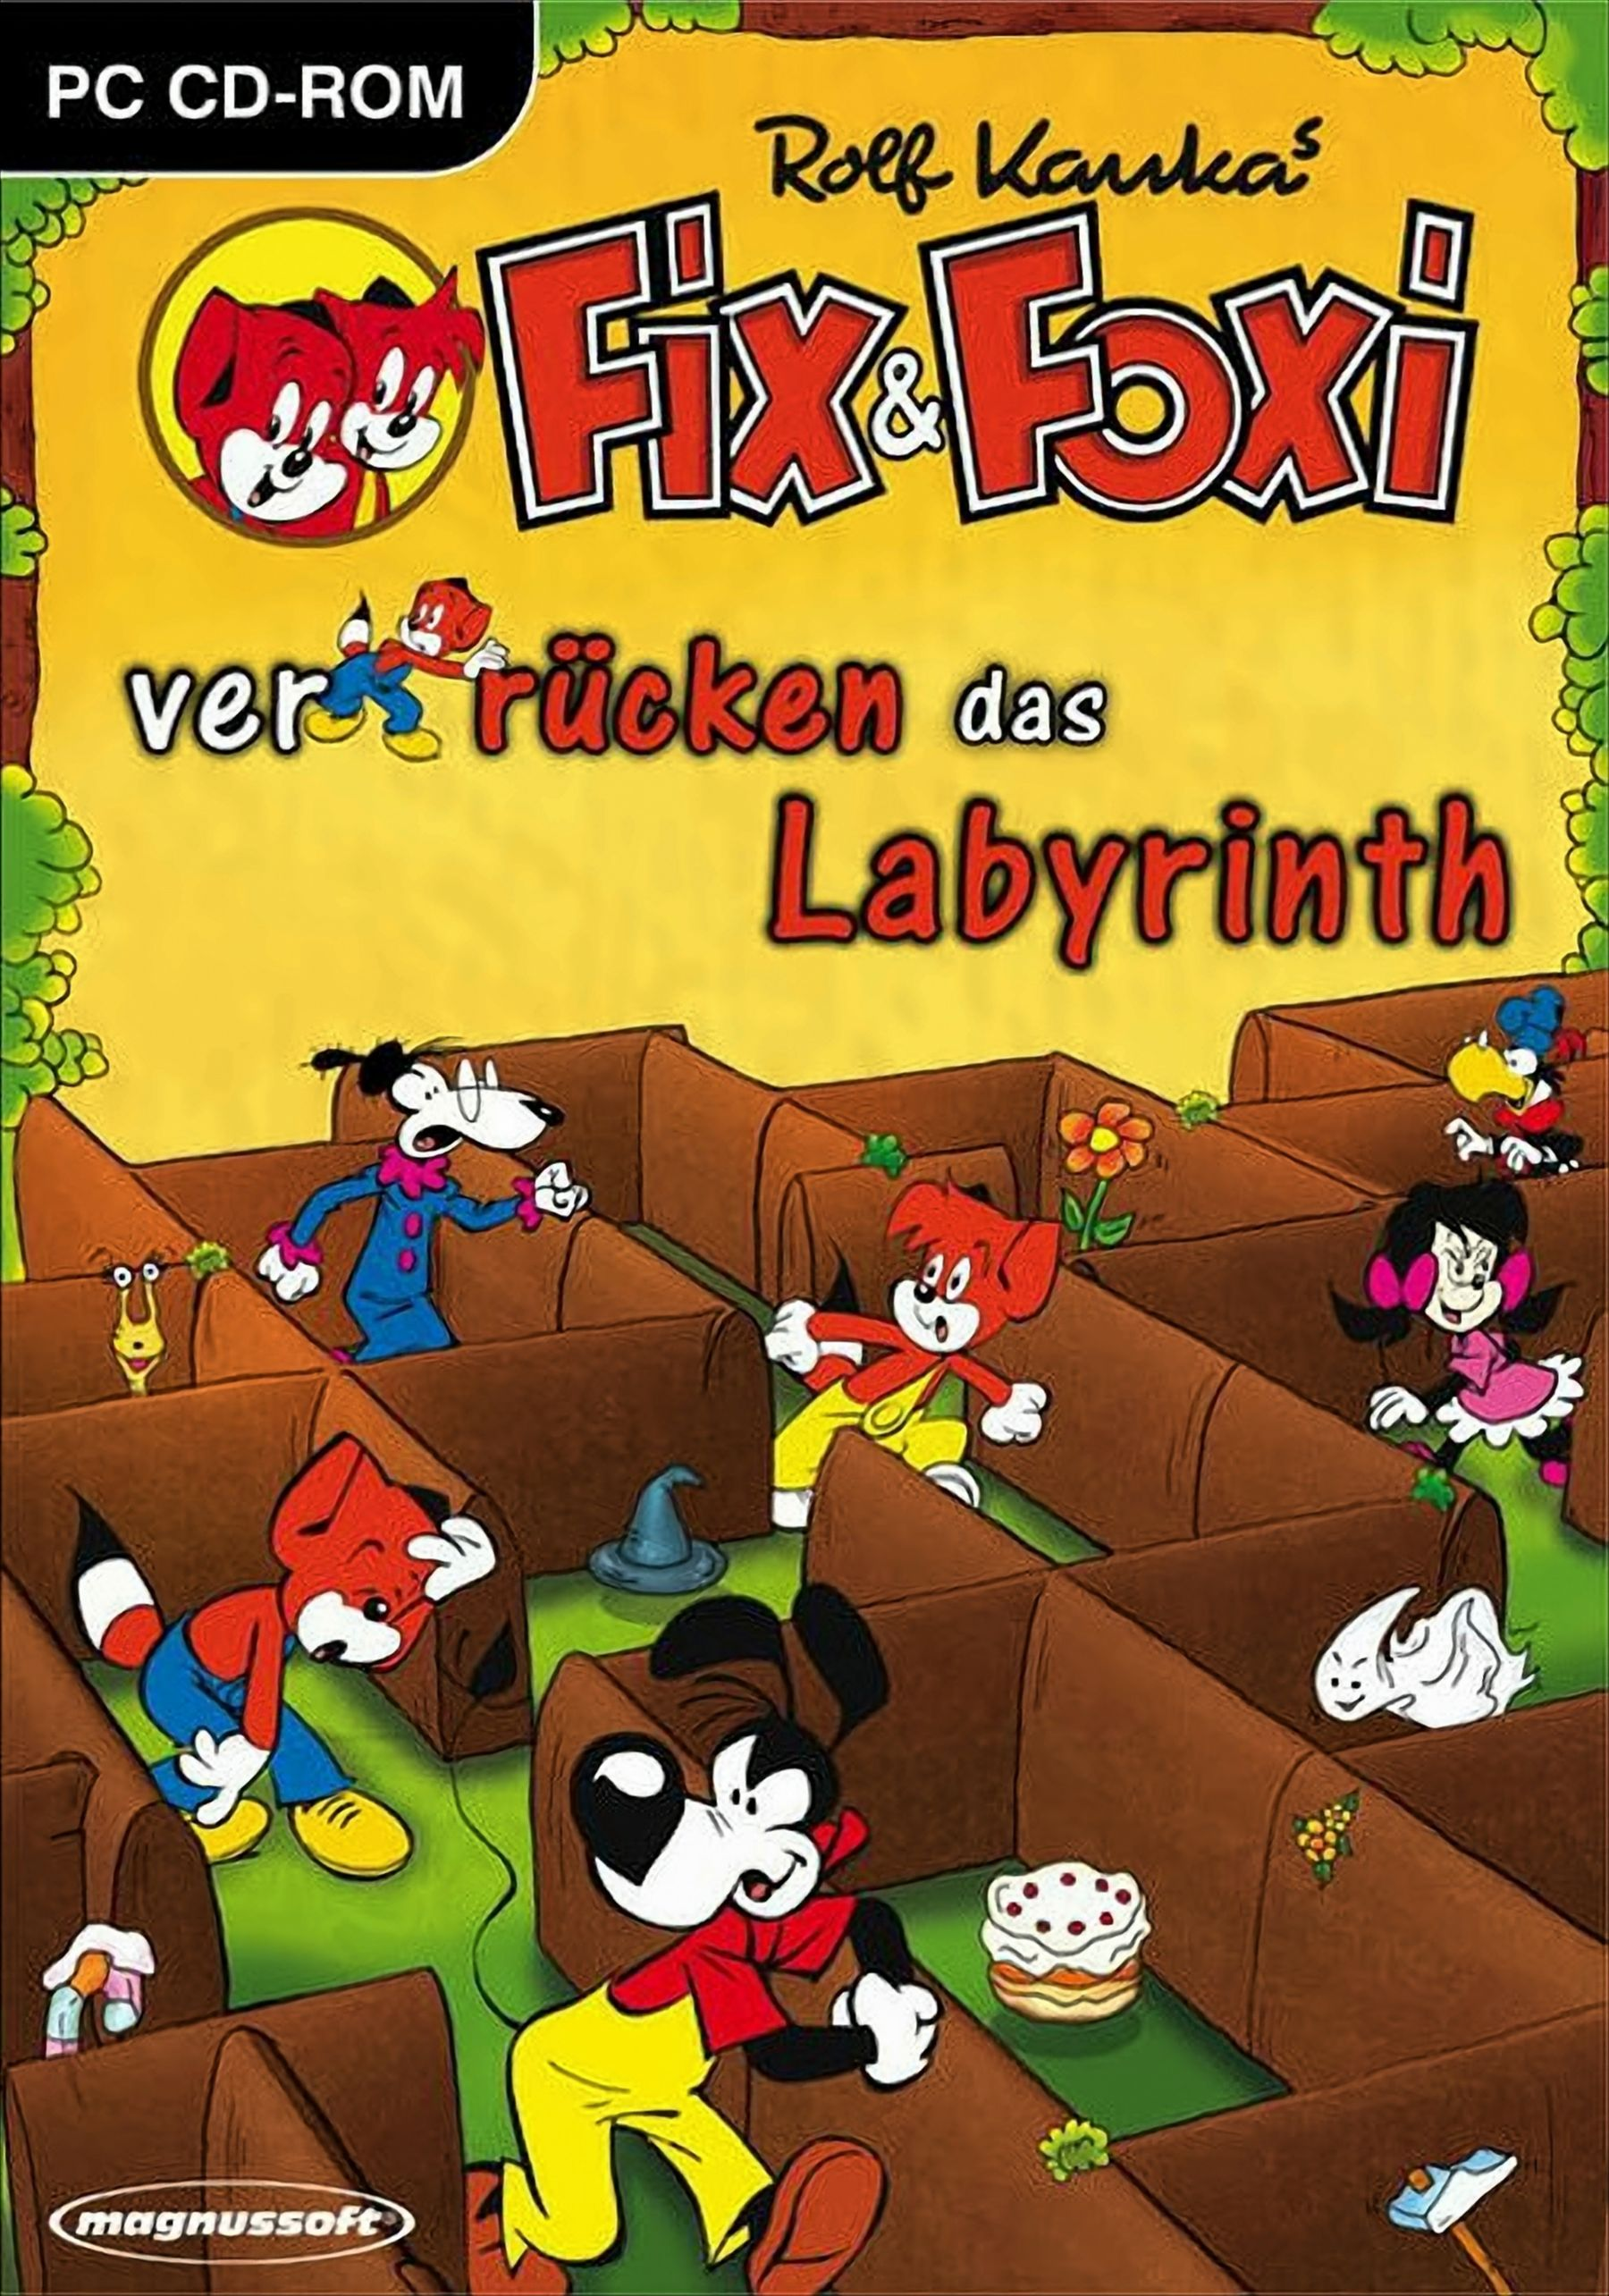 Fix & Foxi verrücken Labyrinth [PC] das 